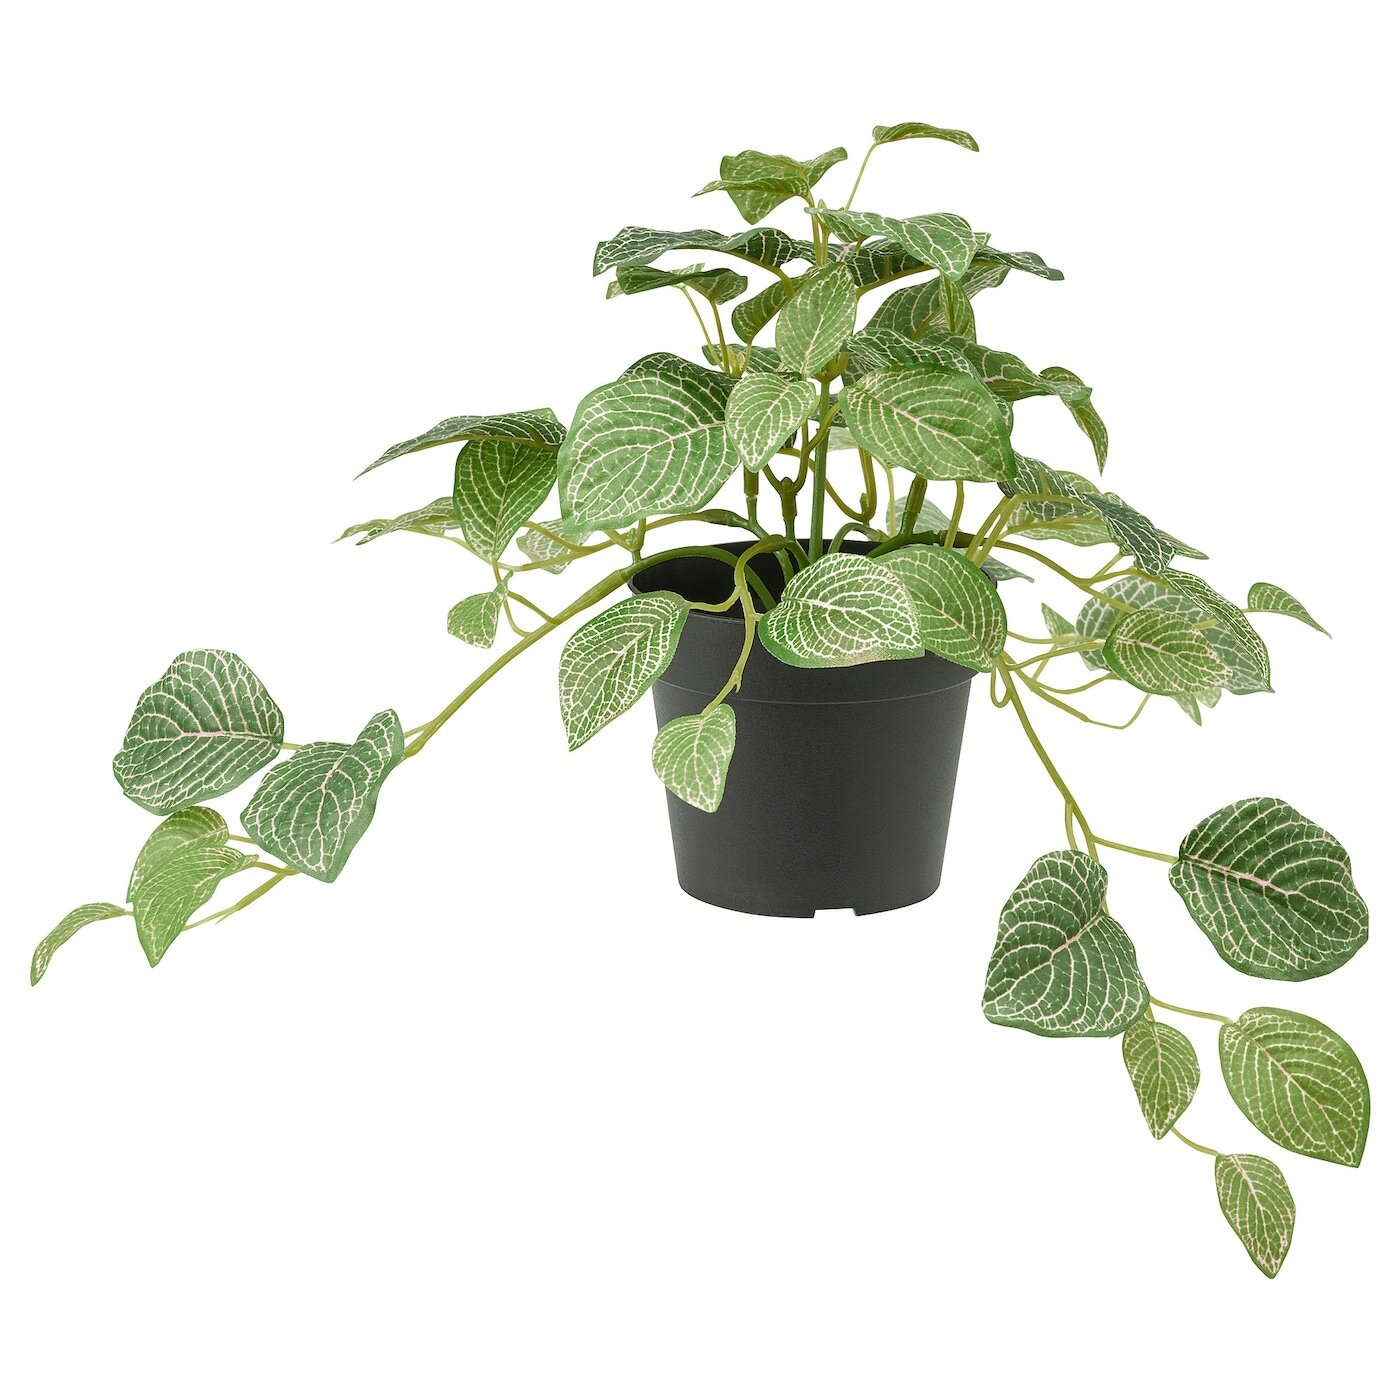 Искусственное растение в горшке икеа фейка (IKEA FEJKA), фиттония, 28 см, зеленый